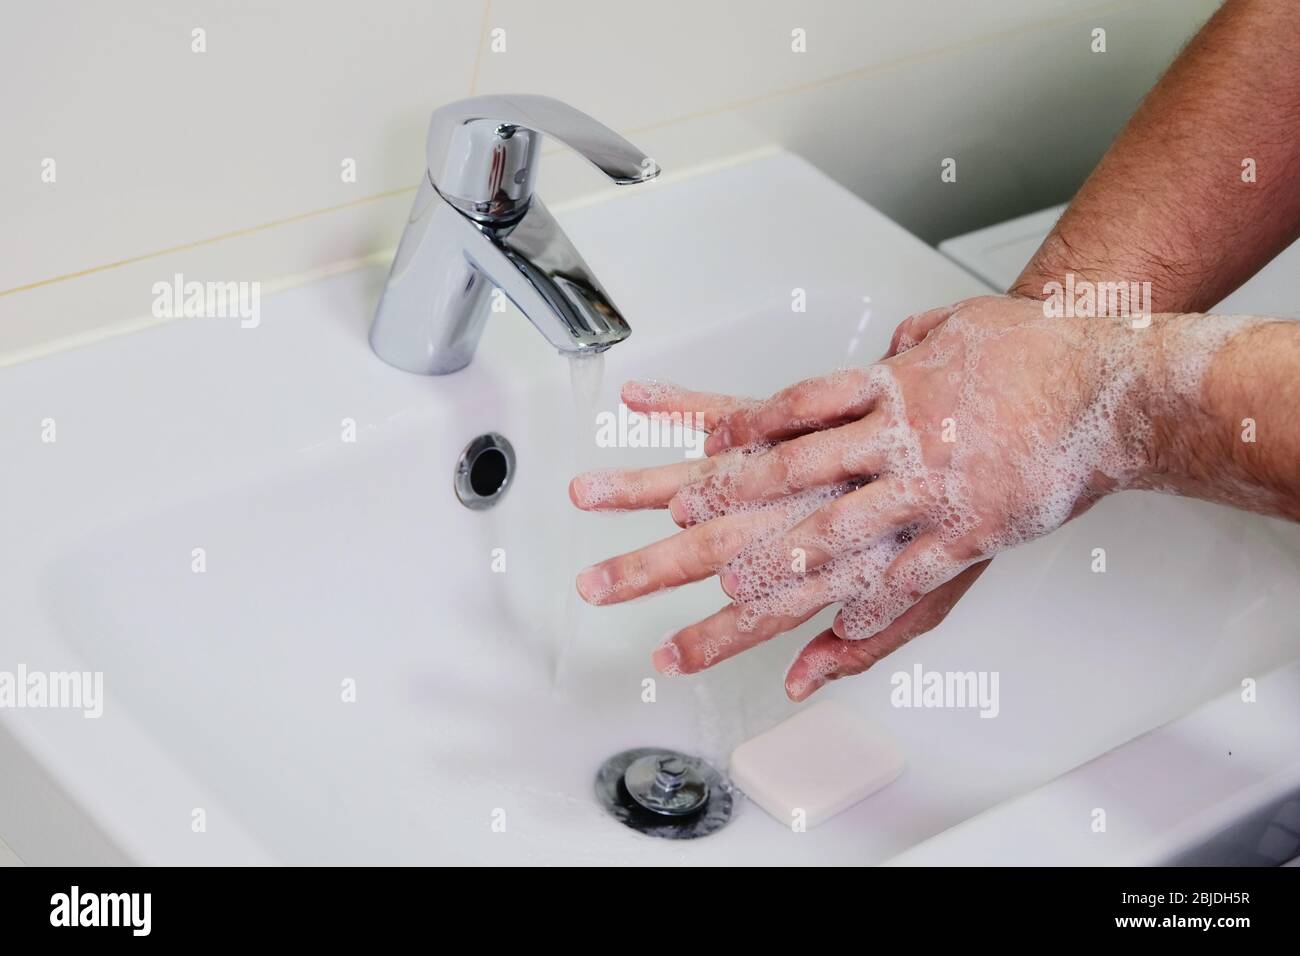 Hygiene und Prävention von Infektionen. Waschen Hände reiben mit Seife Mann für Corona-Virus-Prävention. Reinigung, um die Ausbreitung zu stoppen covid-19. Stockfoto